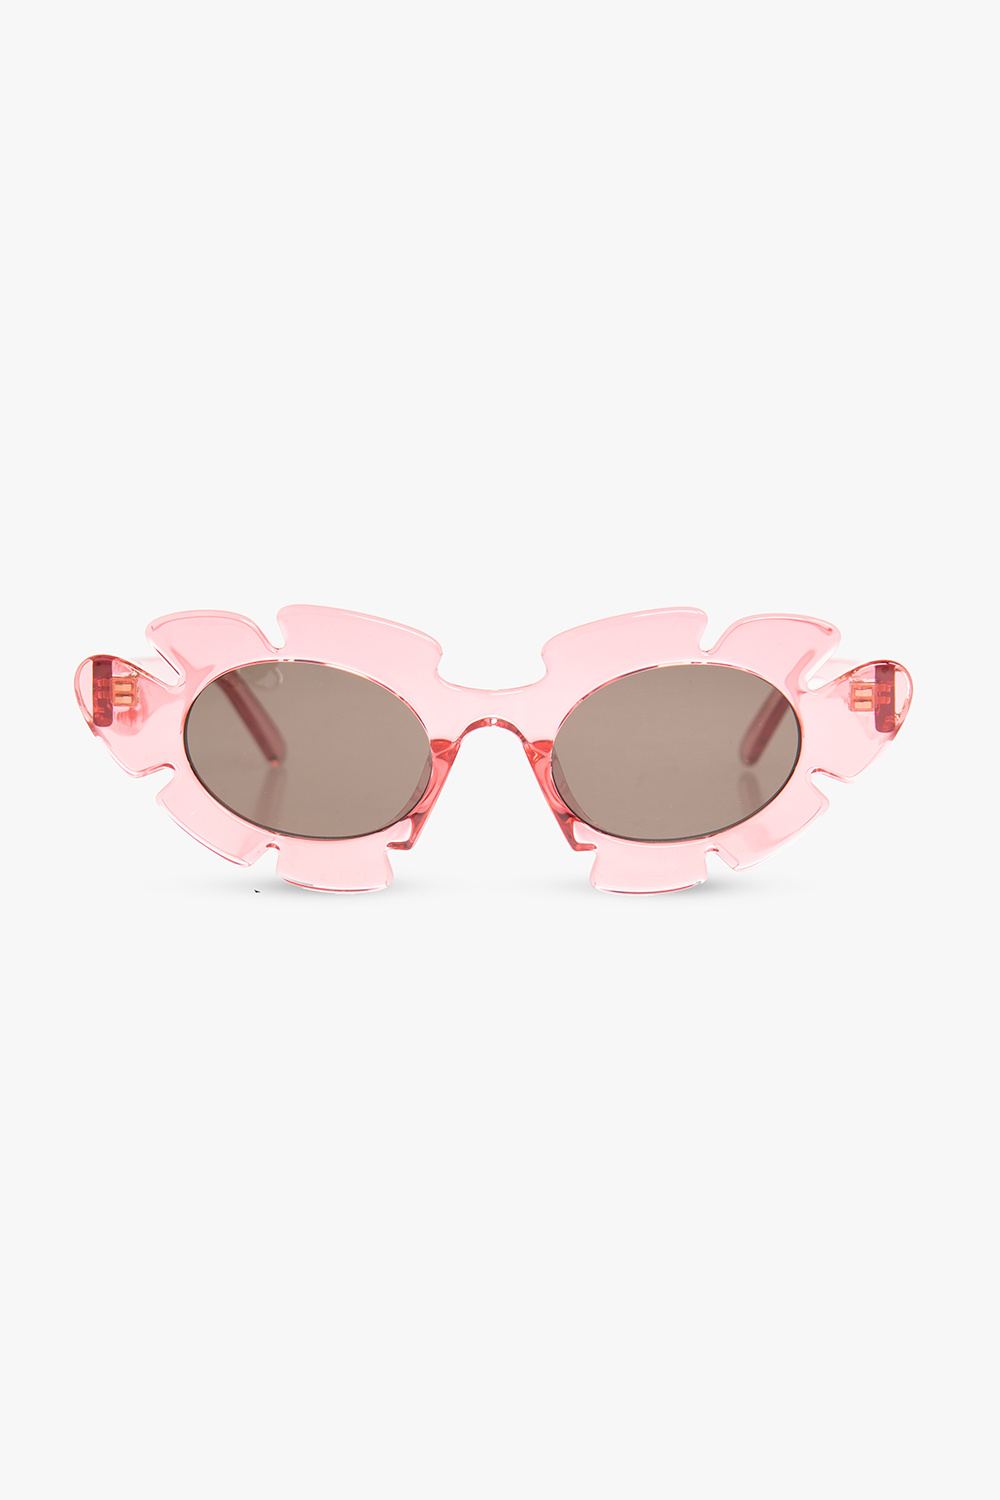 Loewe Eyewear sunglasses